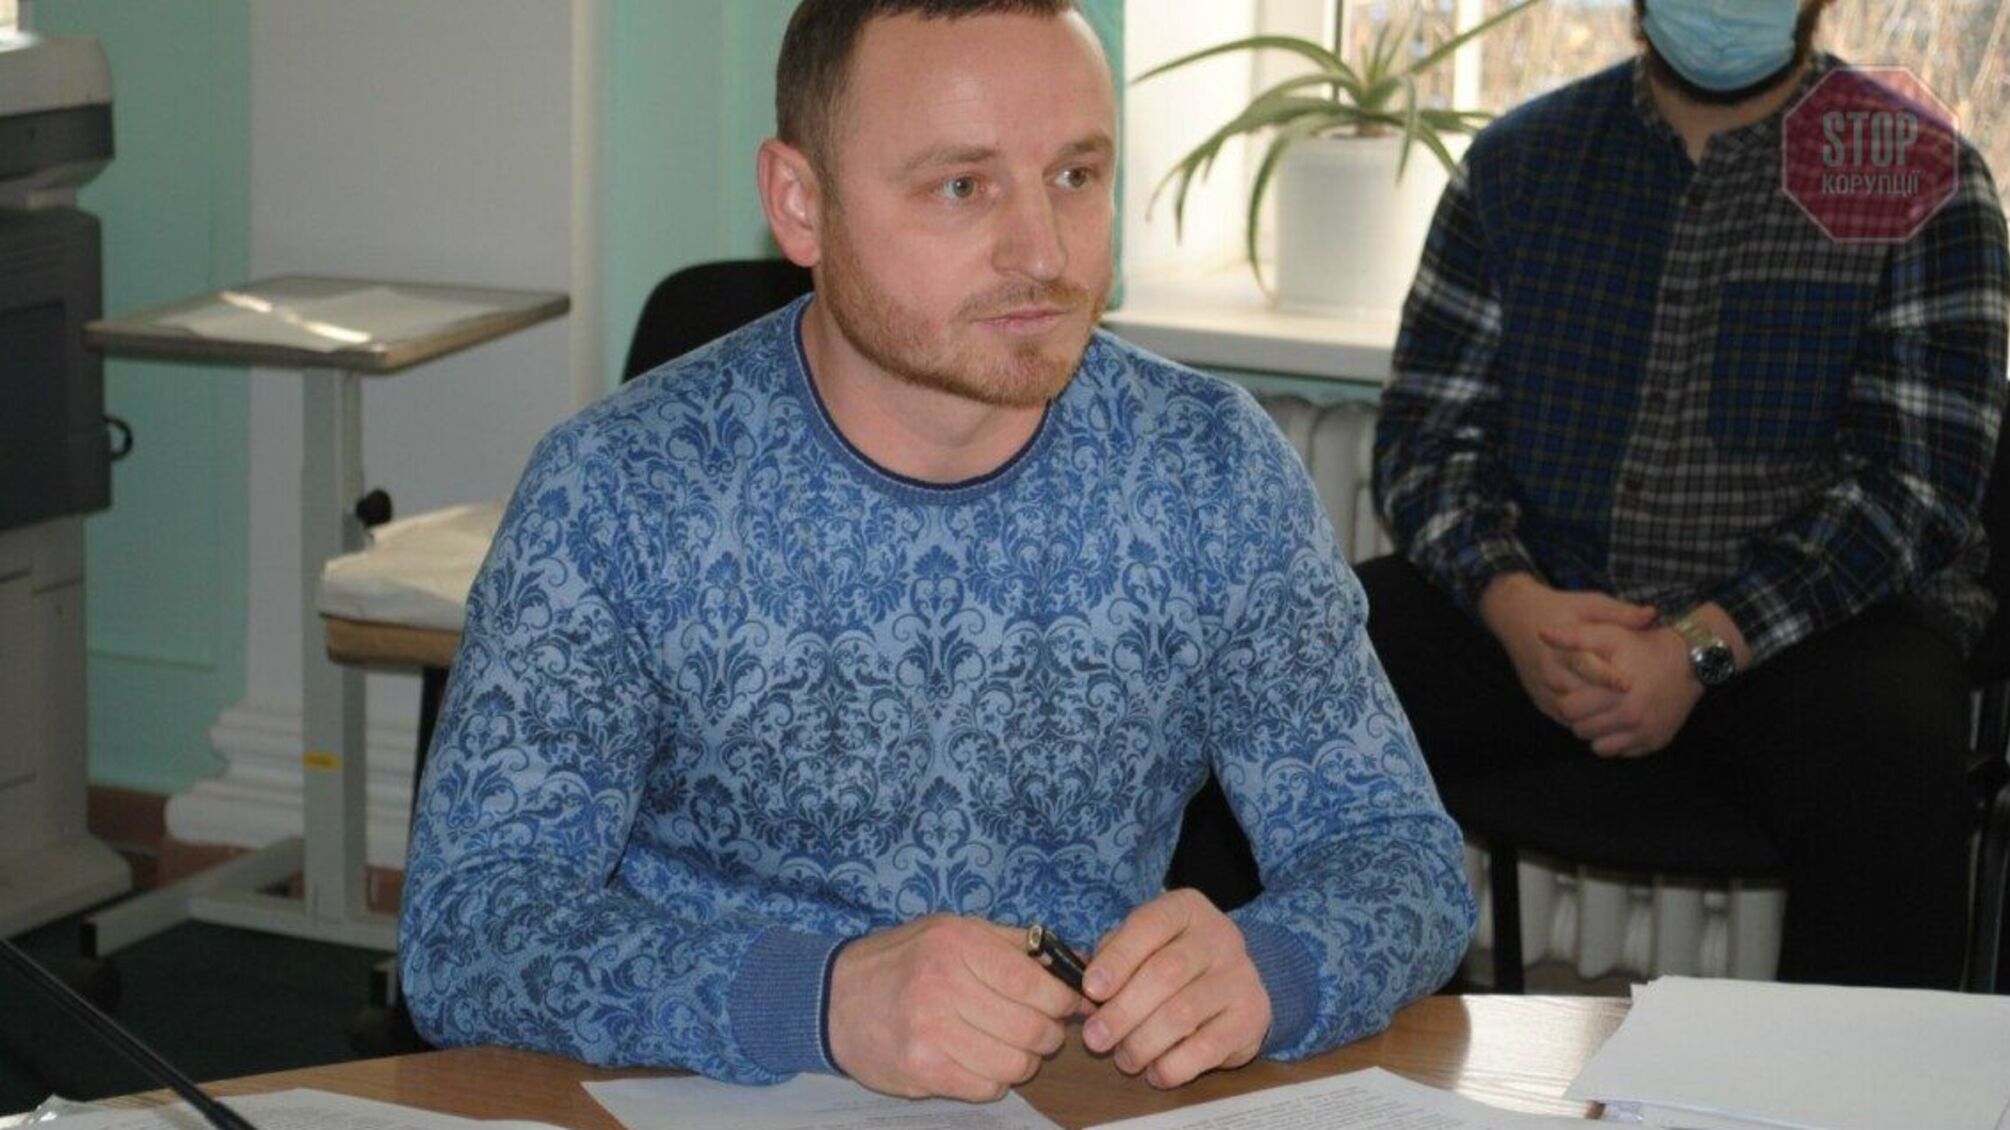 НАПК: Полтавский депутат 'забыл' задекларировать почти 9 млн гривен